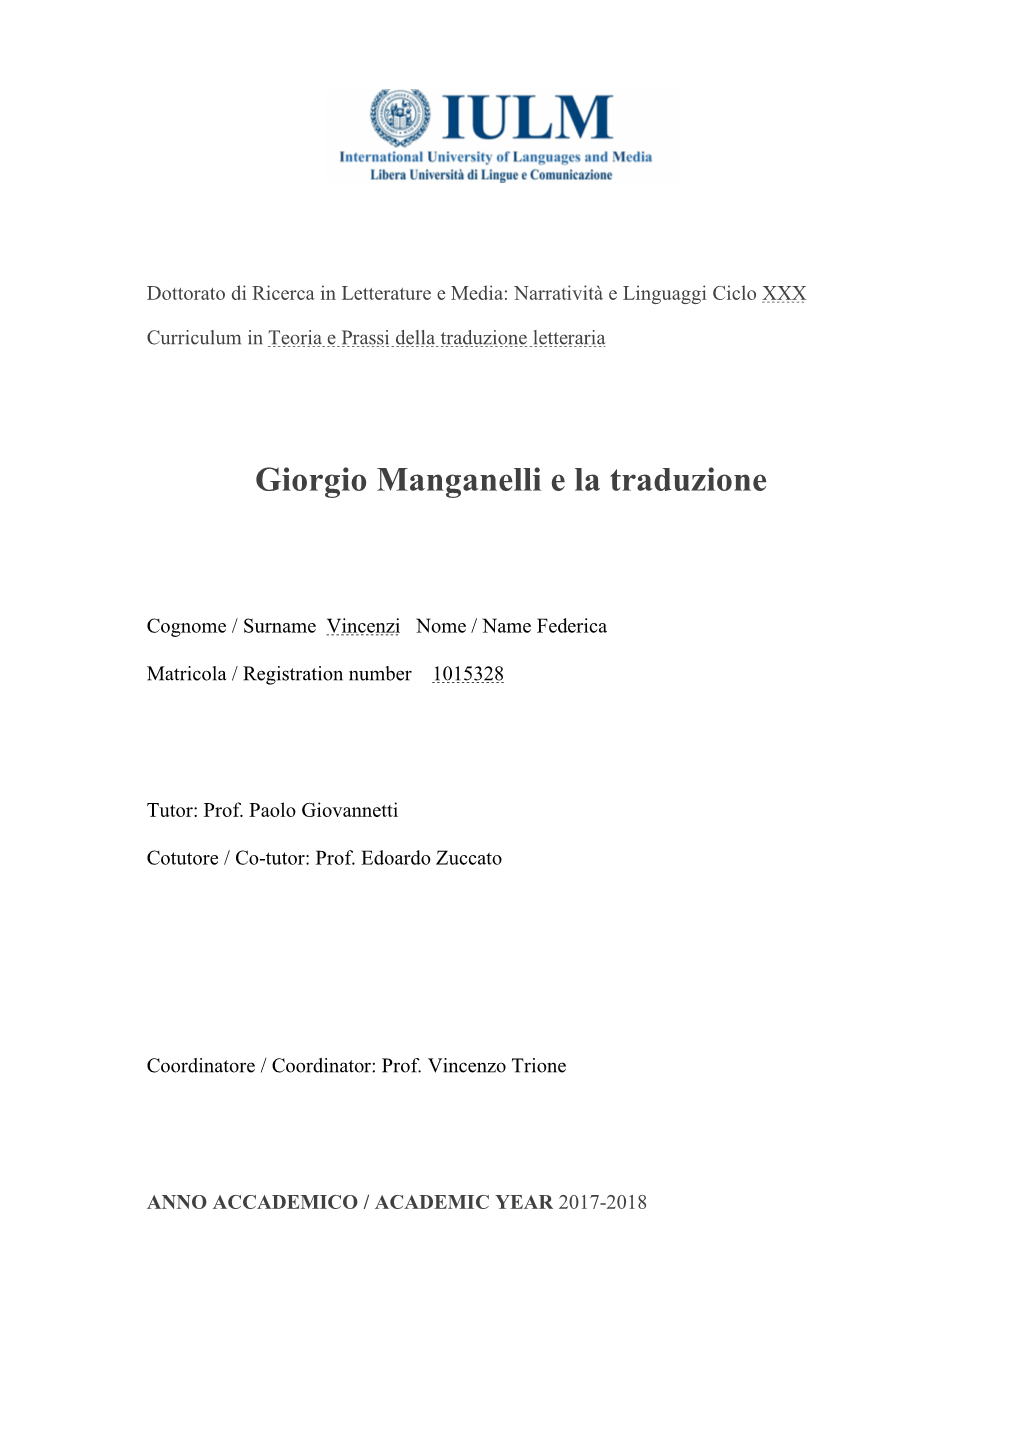 Giorgio Manganelli E La Traduzione